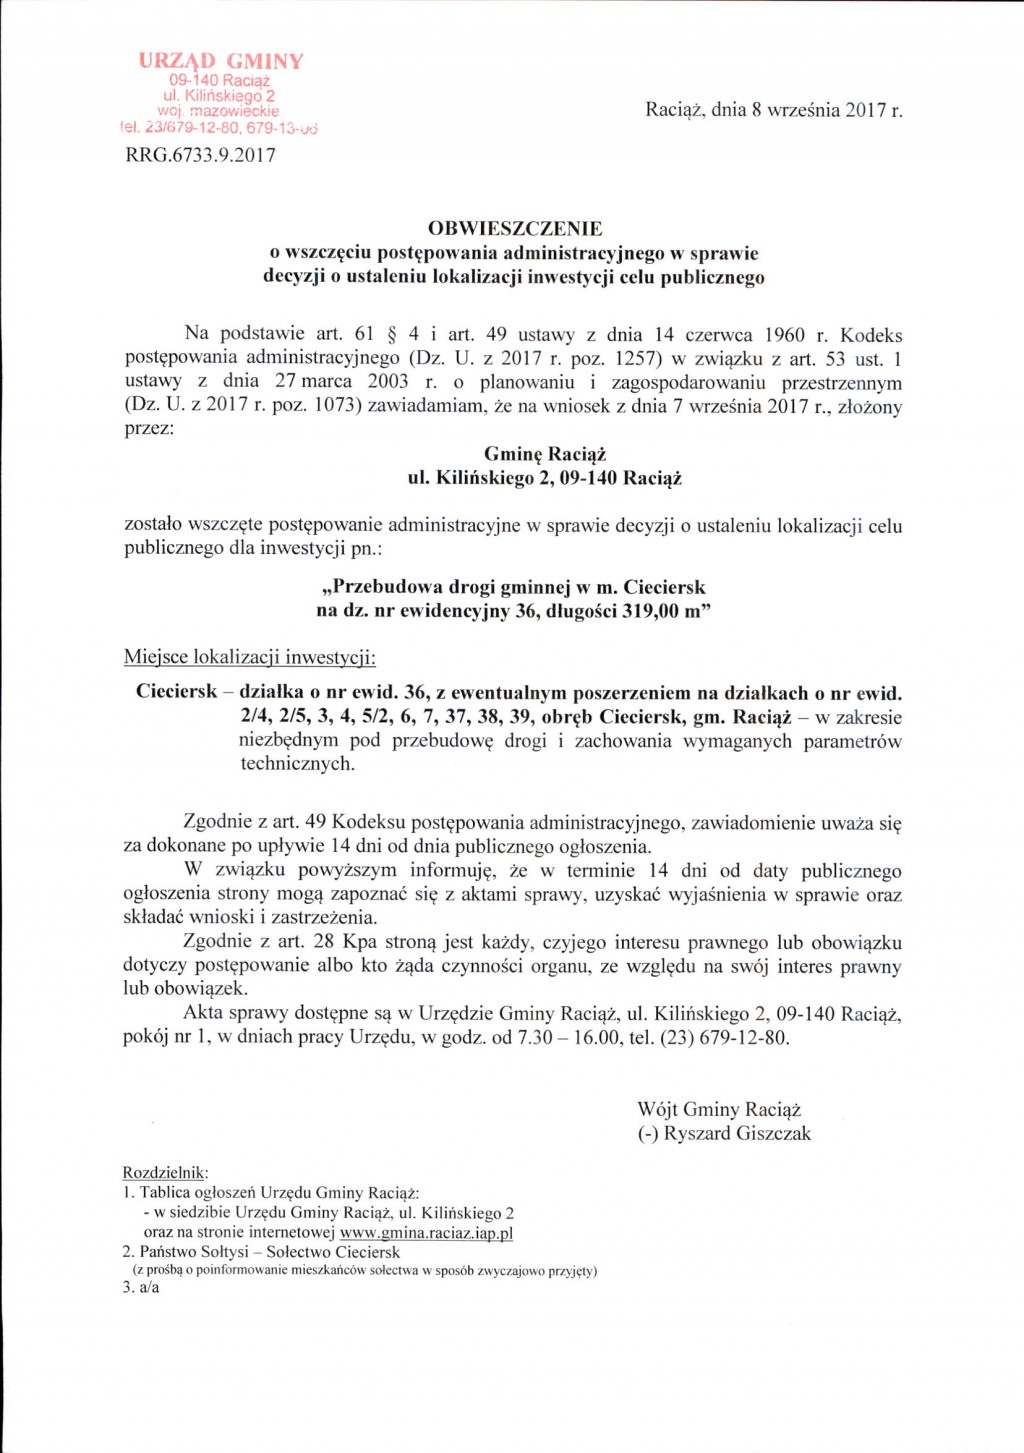 Obwieszczenie - Przebudowa drogi gminnej w m. Cieciersk na dz. nr ewidencyjny 36, długości 319,00 m